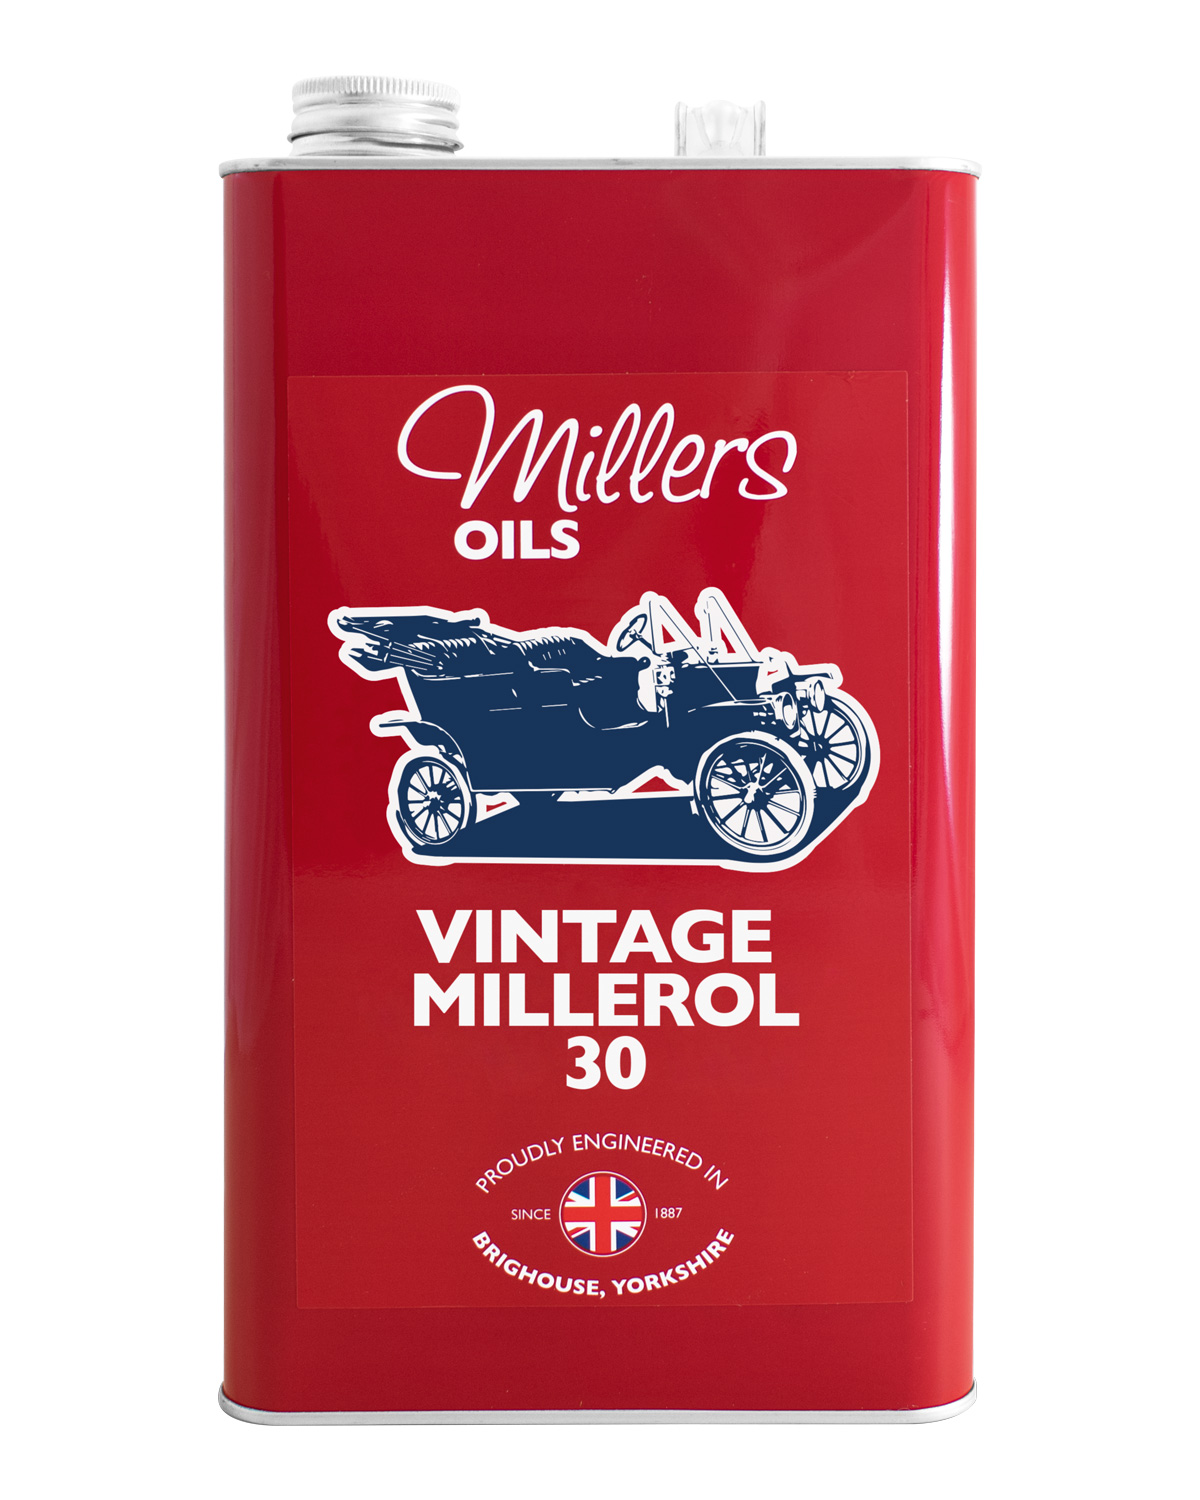 Millers Oils Vintage Millerol 30, 5 Liter